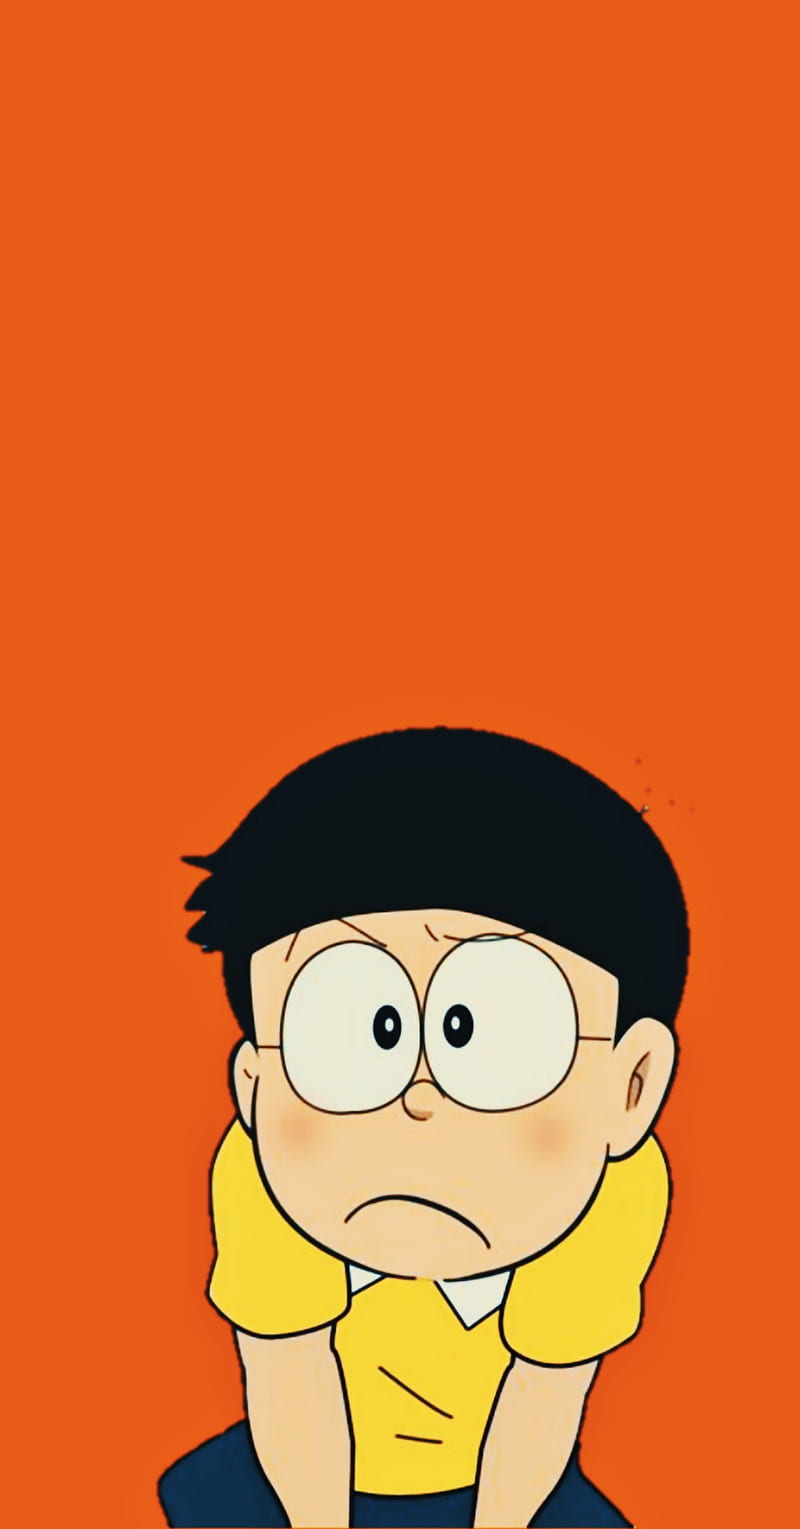 Hình nền Nobita cool ngầu tuyệt vời: Với bộ sưu tập hình nền Nobita mới nhất, bạn sẽ được trải nghiệm những bức ảnh tuyệt đẹp với phong cách độc đáo và cá tính, khiến cho màn hình điện thoại của bạn thêm phần cool ngầu và thu hút các ánh nhìn. Hãy tải ngay và trang trí cho thiết bị của mình.